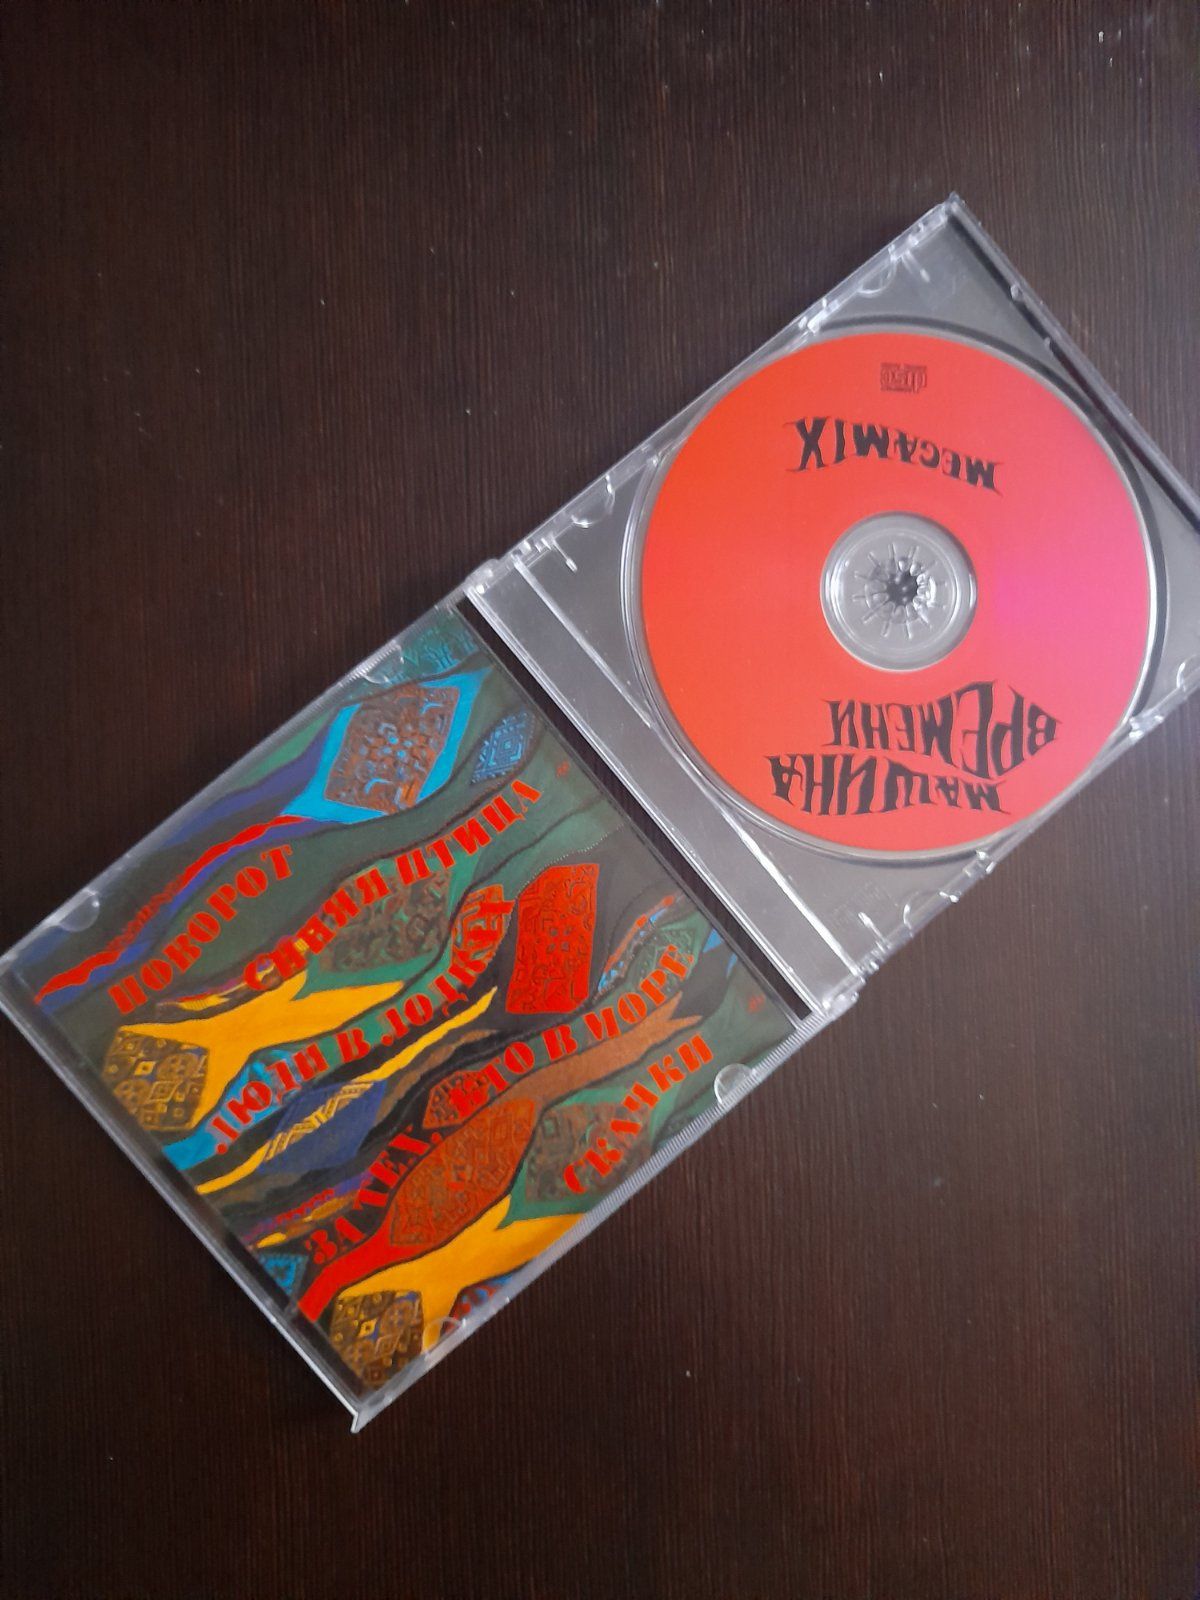 Фирменные CD диски  В.Кузьмин, "Машина времени", "Дюна"